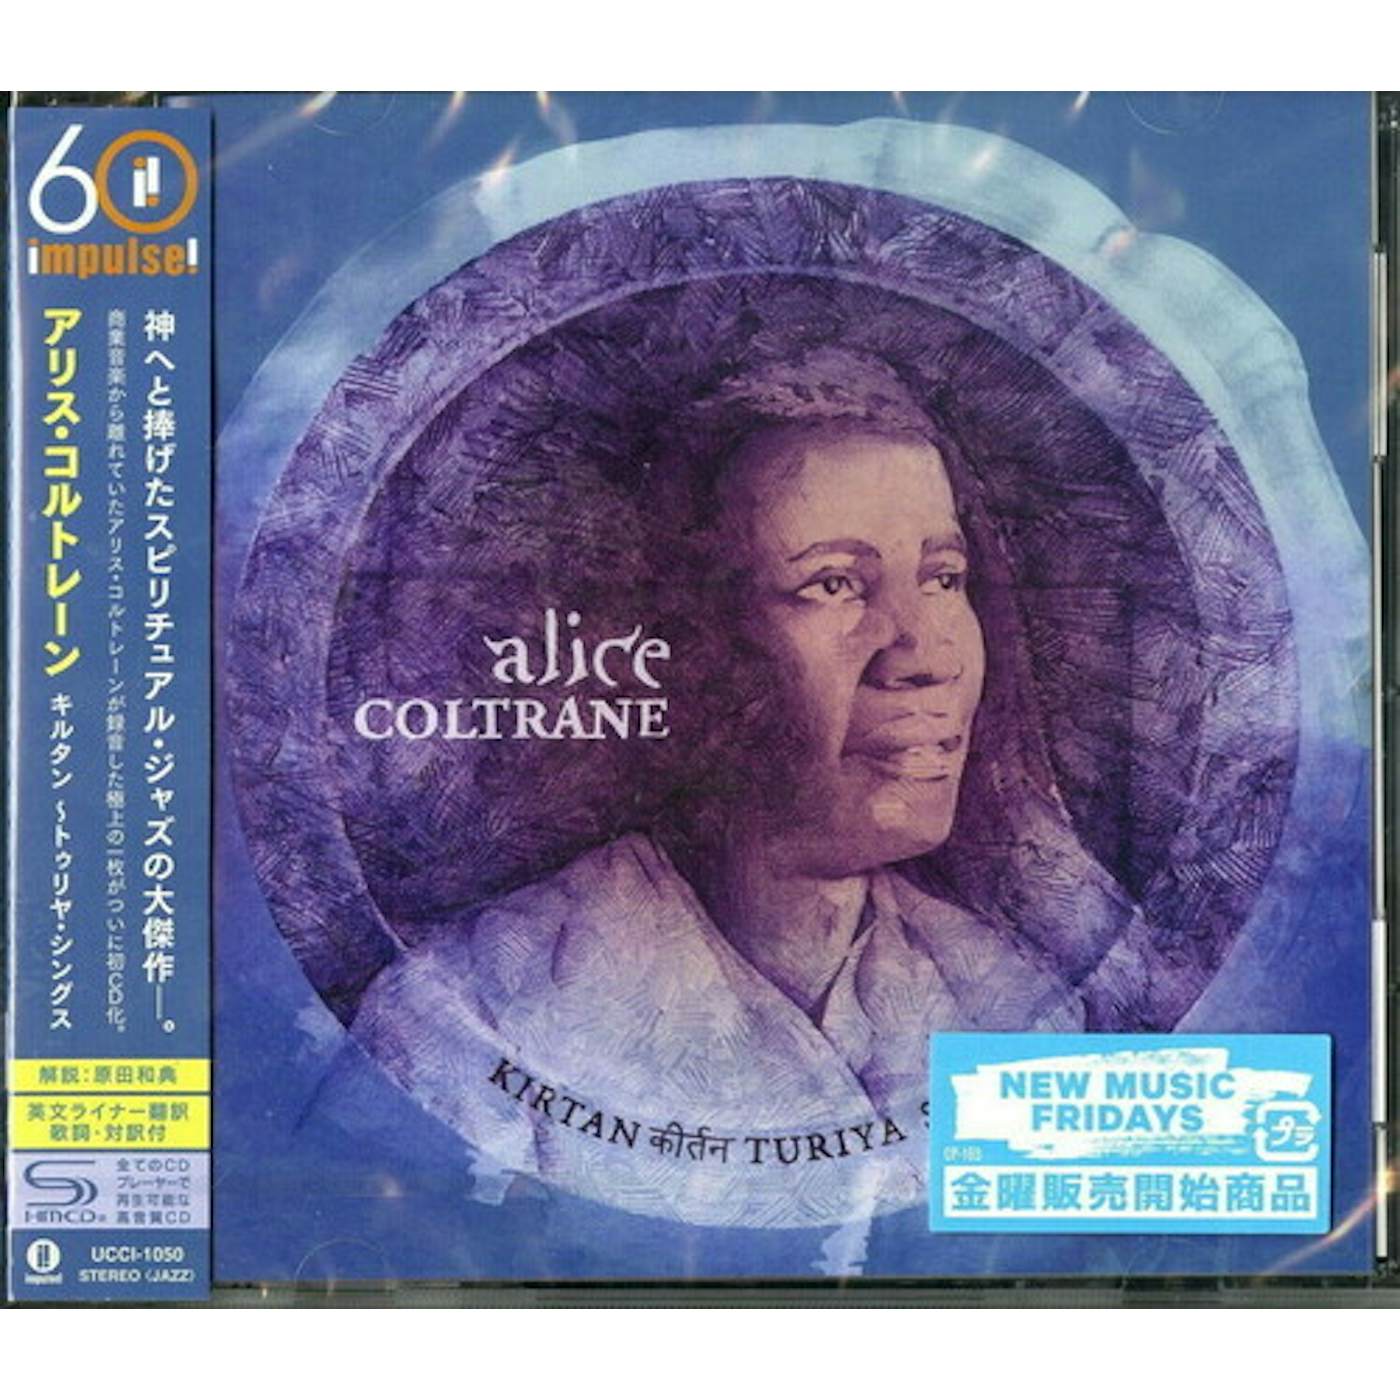 Alice Coltrane KIRTANA TRIYA SINGS CD